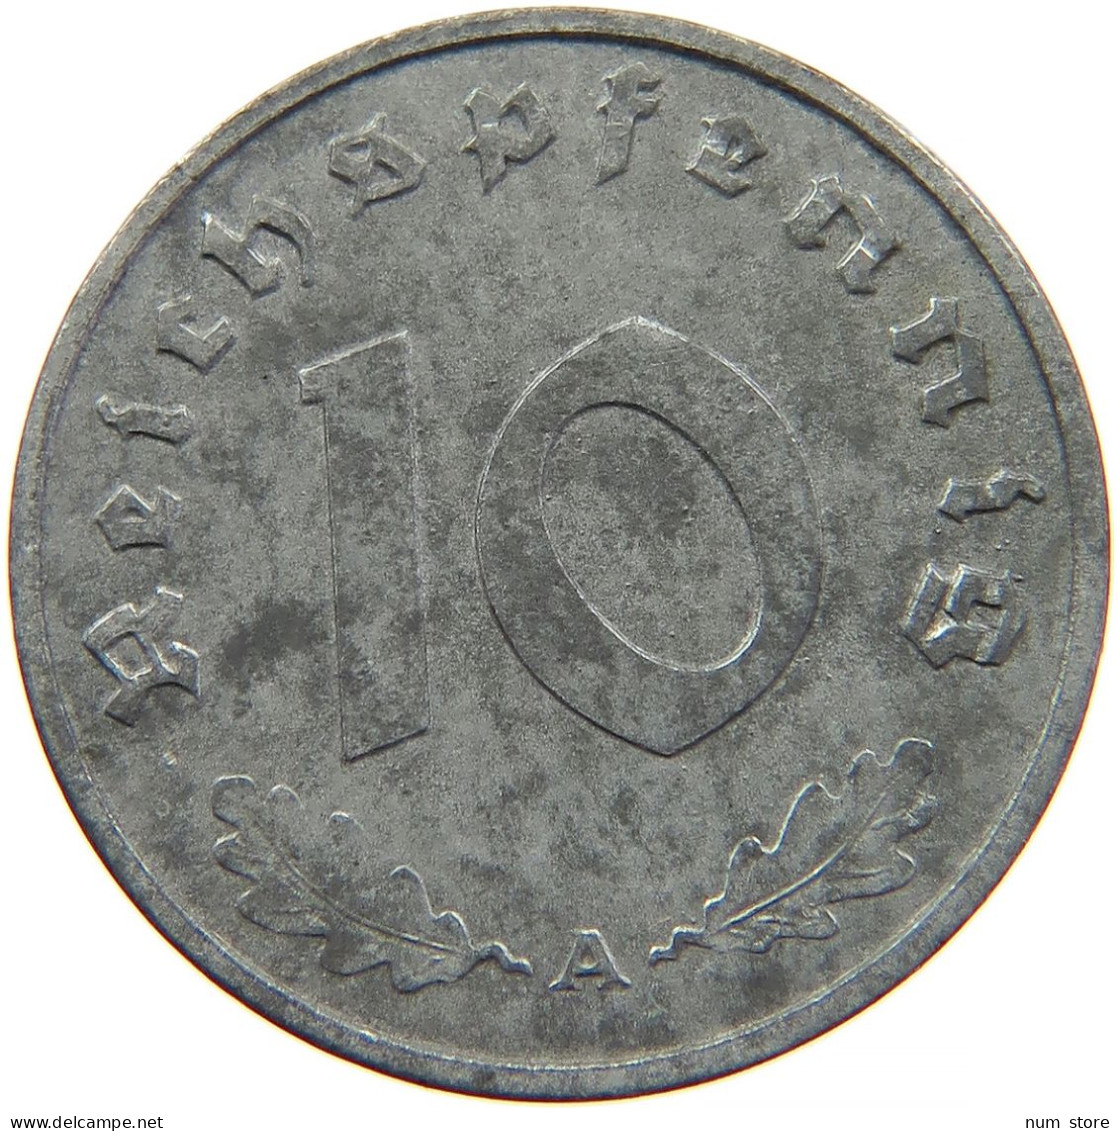 GERMANY 10 REICHSPFENNIG 1943 A #s095 0089 - 10 Reichspfennig